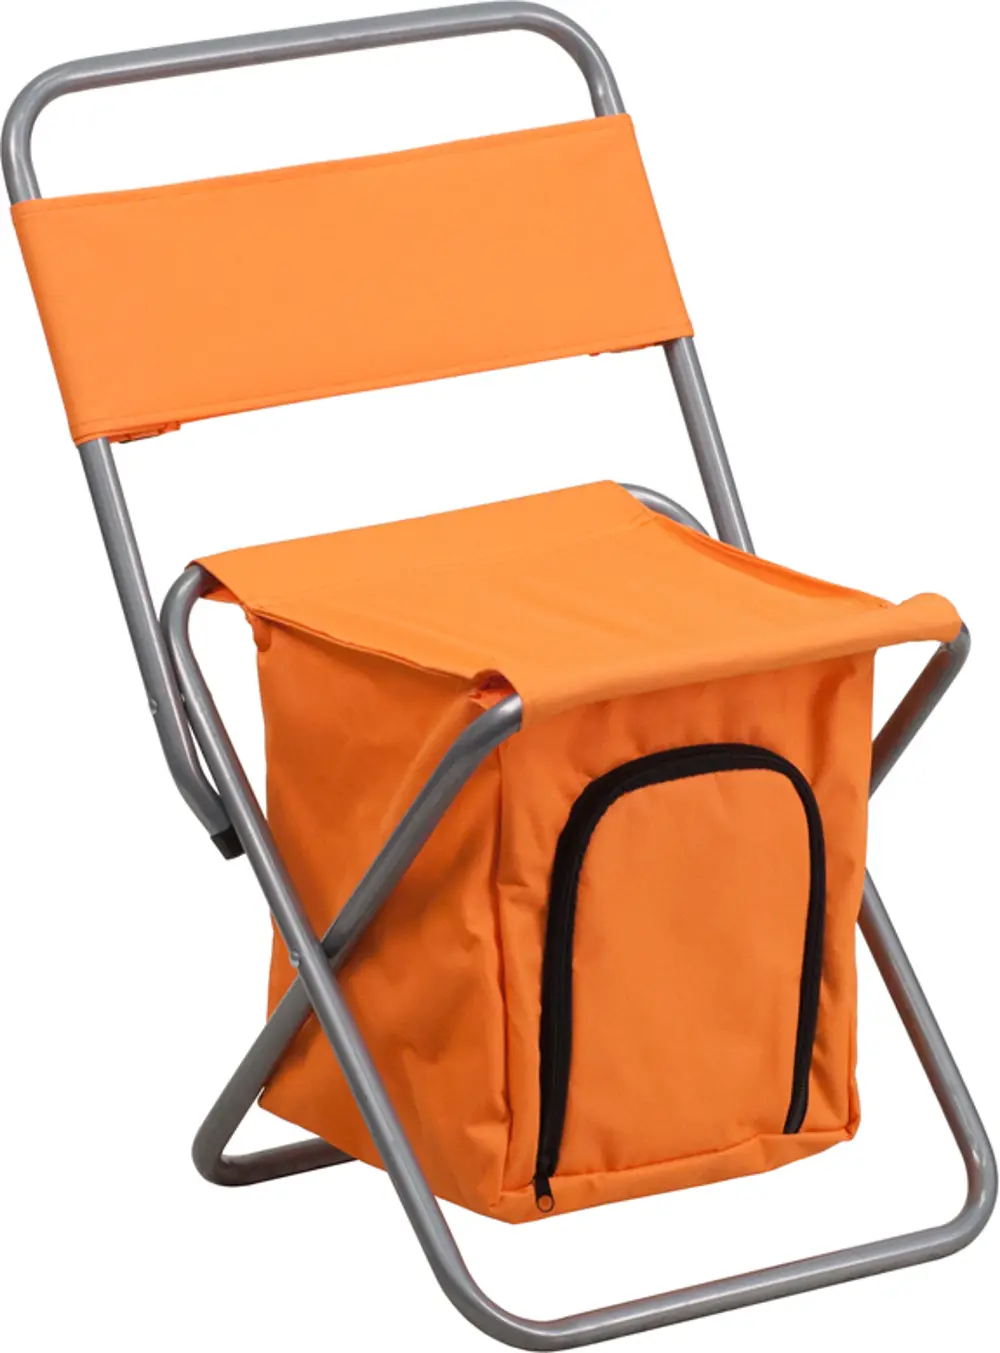 Kids Orange Folding Camping Chair-1